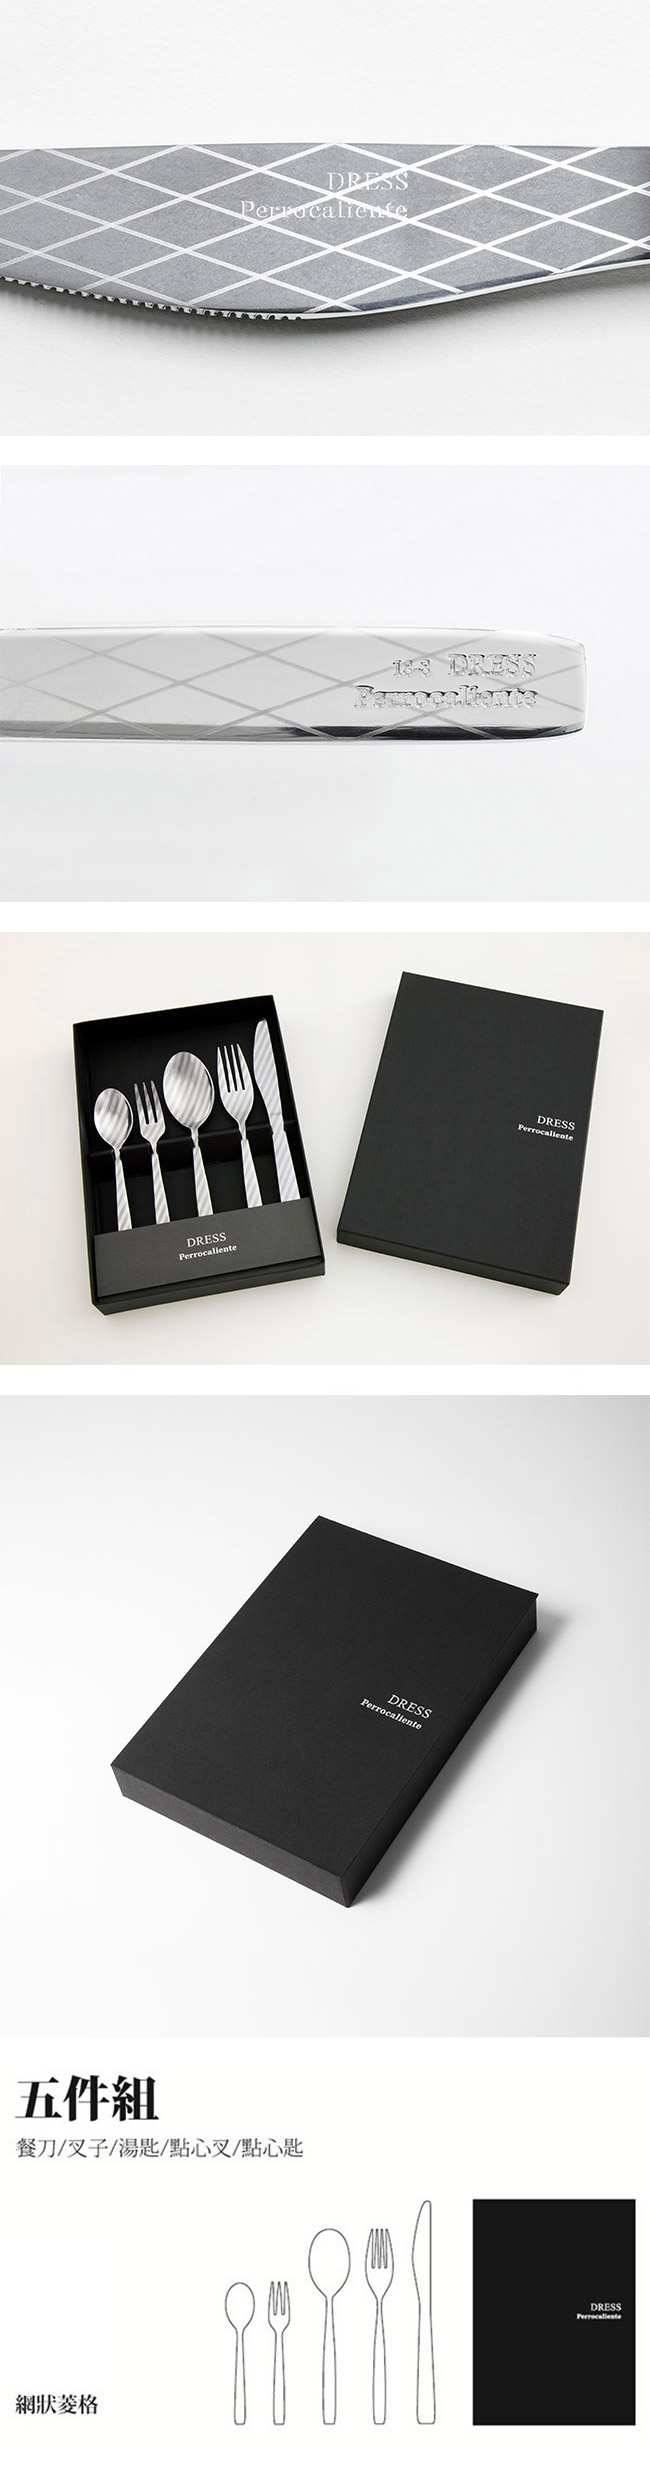 【4/16~4/22精選品牌9折優惠】Perrocaliente Dress Gift Set 銀色盒裝餐具組 五件組 網狀菱格